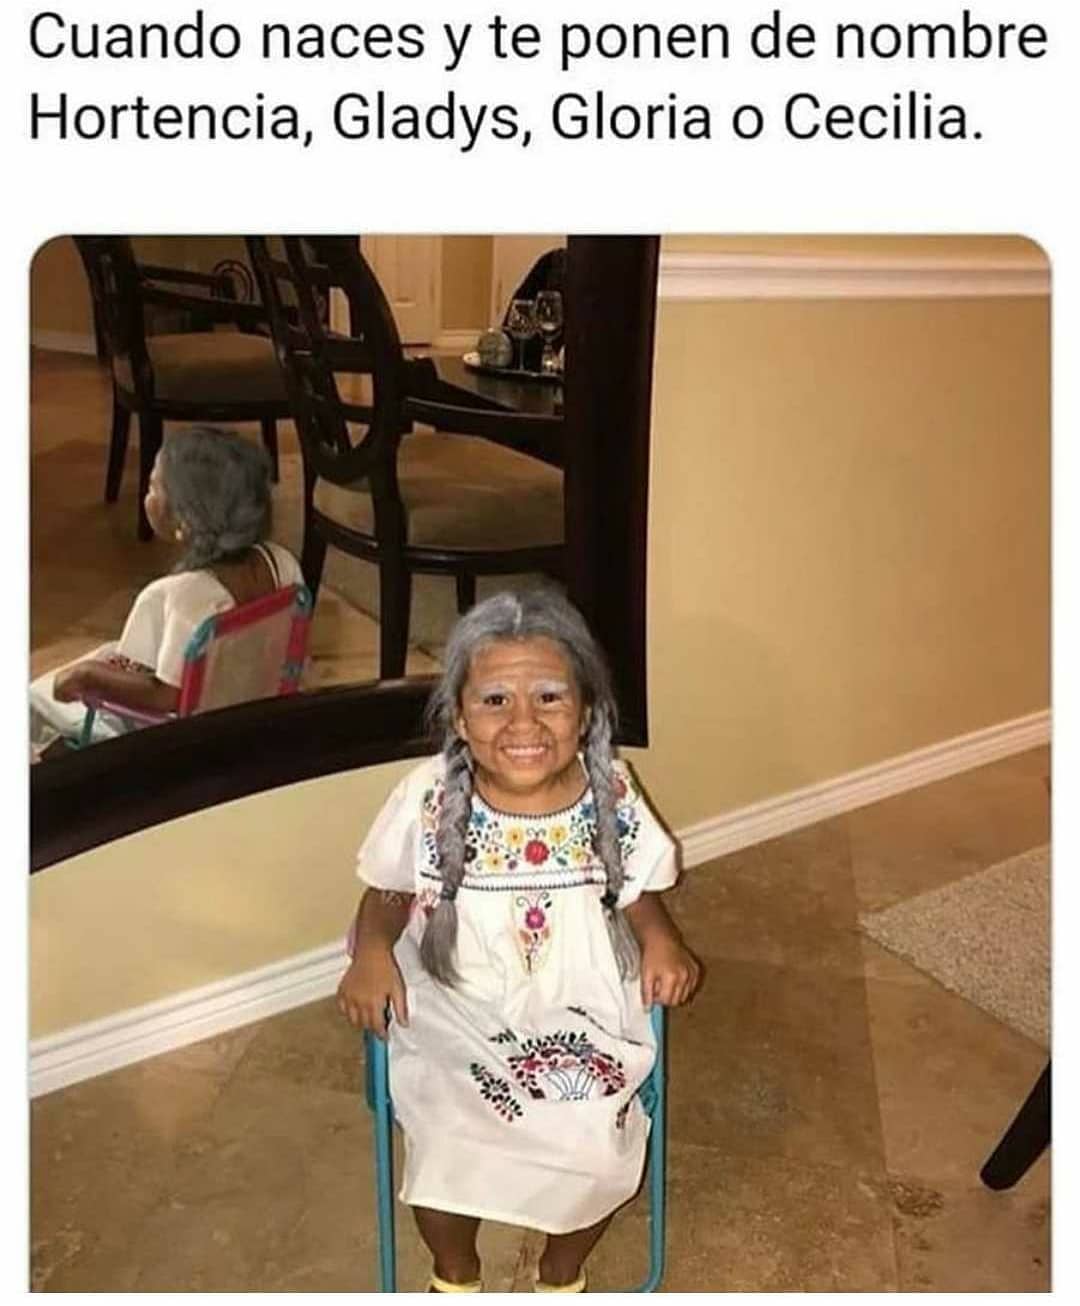 Cuando naces y te ponen de nombre Hortencia, Gladys, Gloria o Cecilia.